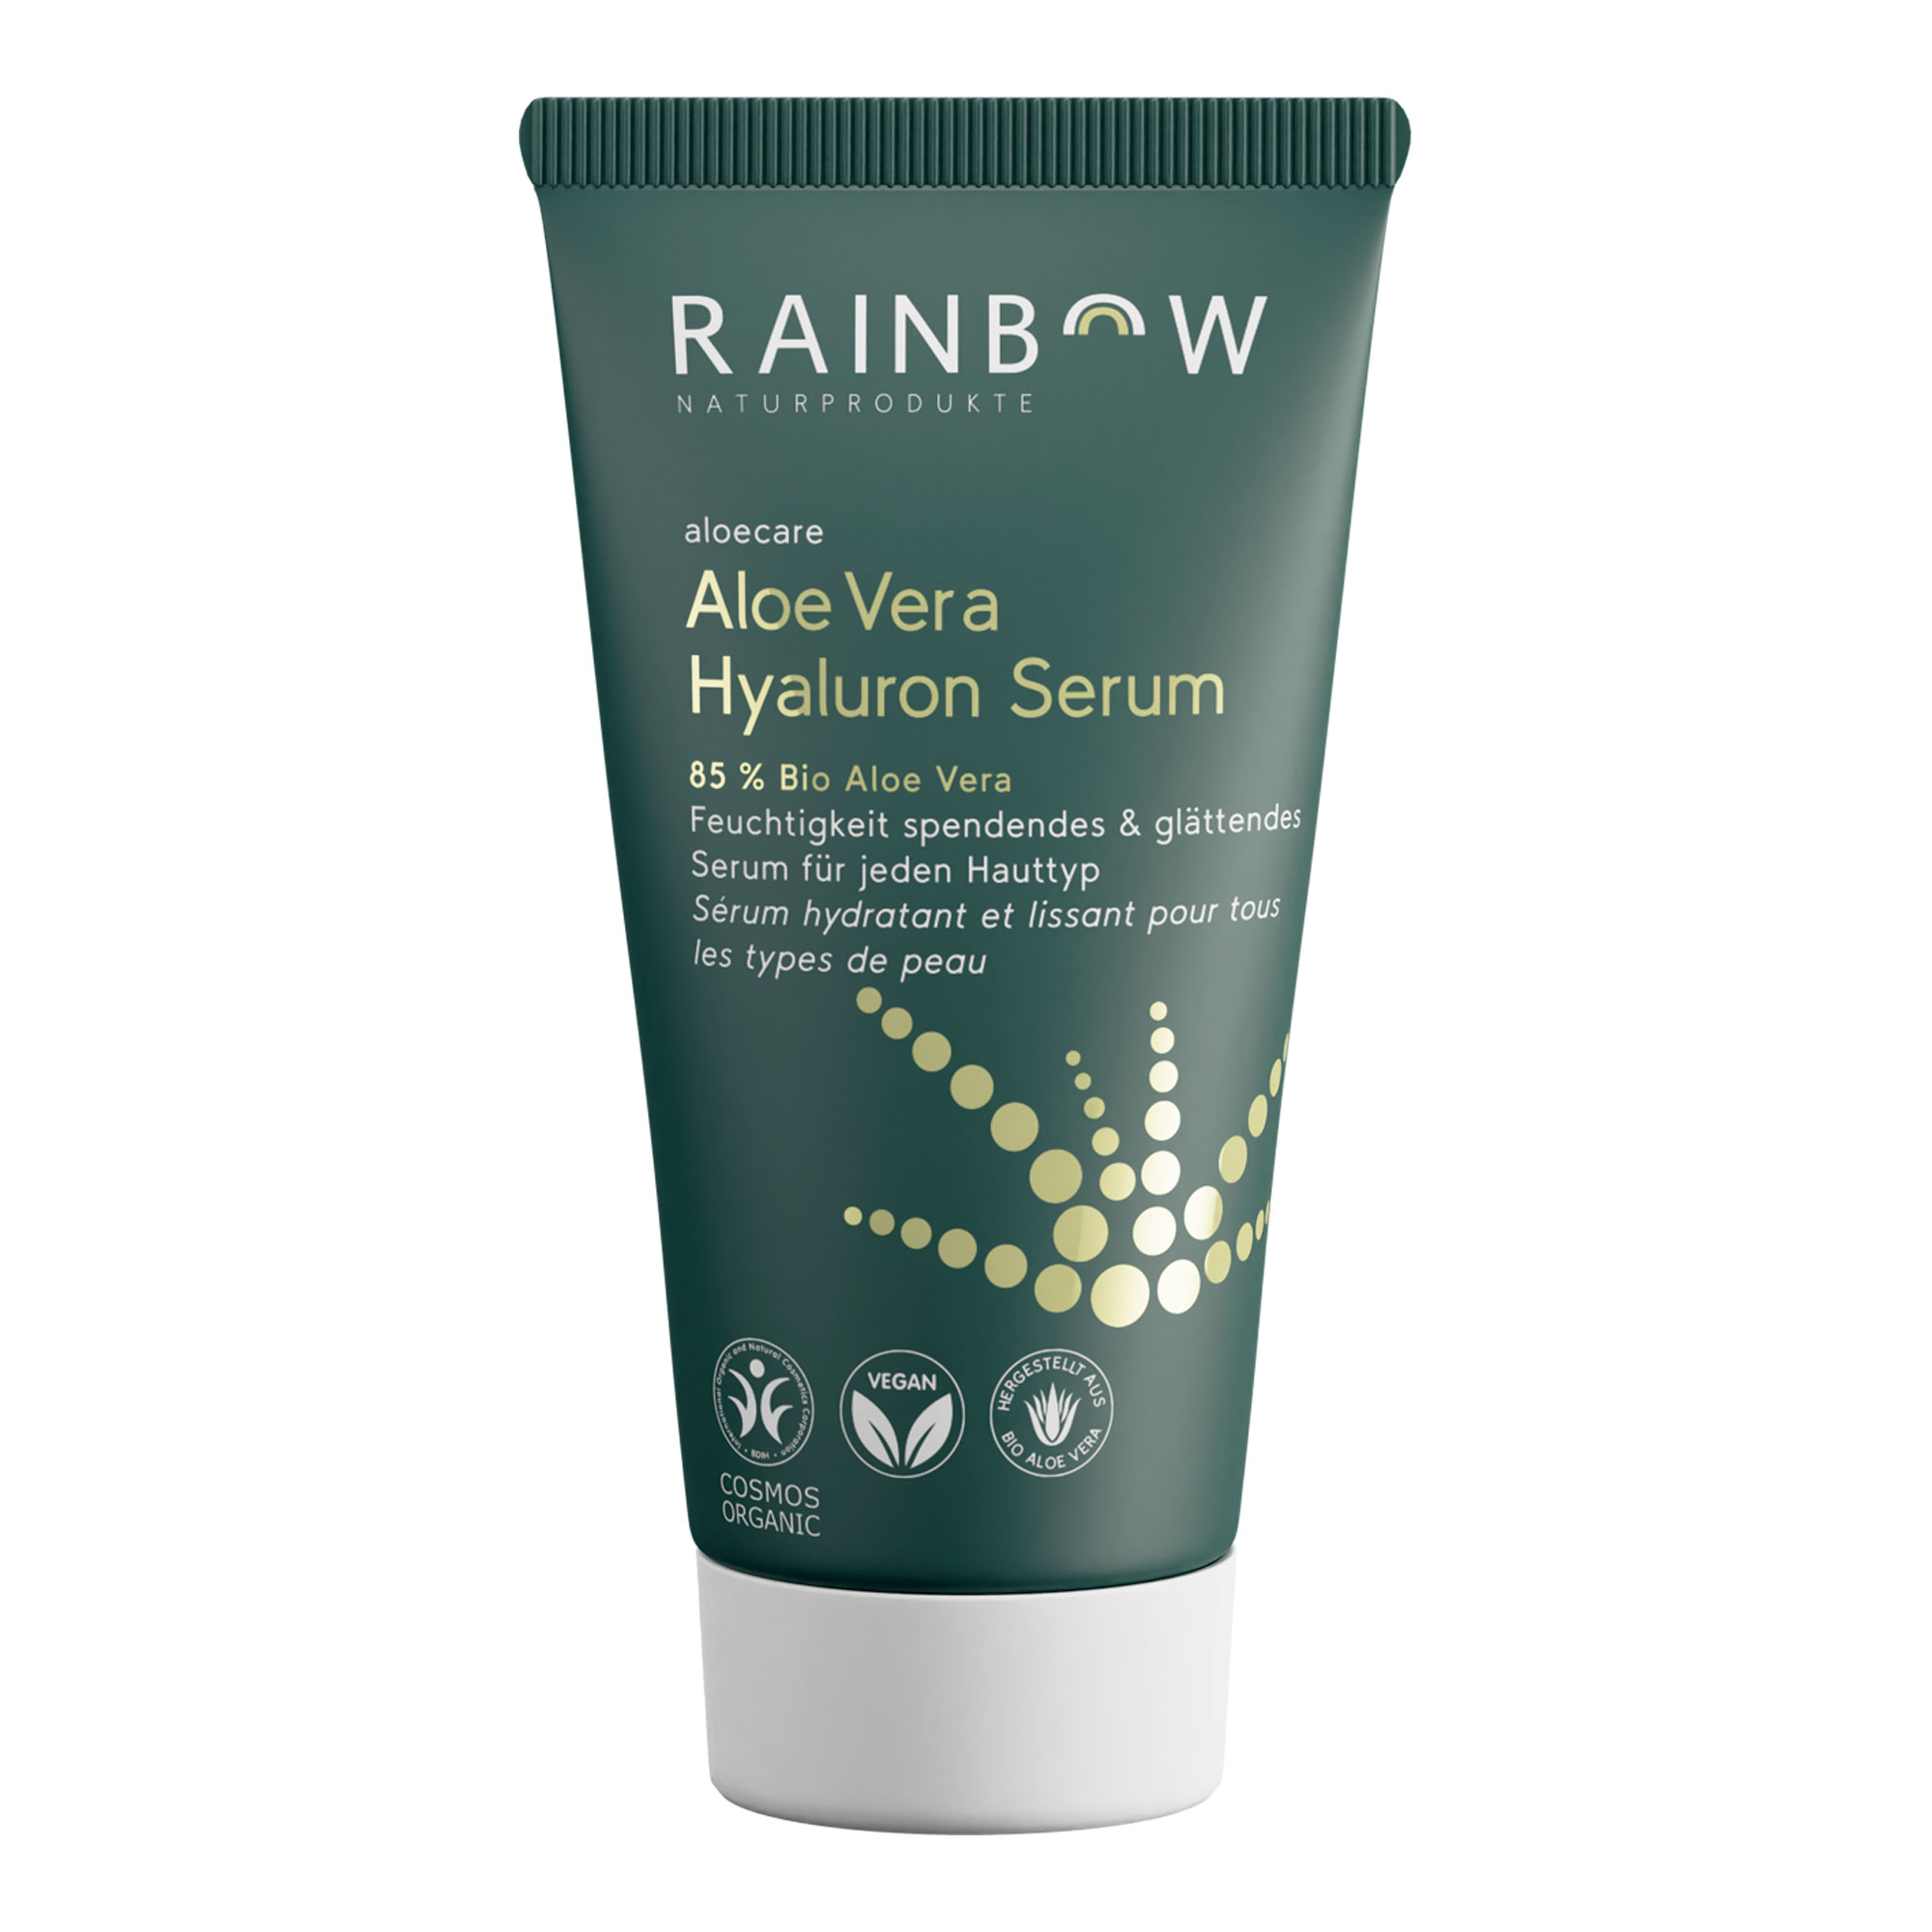 Feuchtigkeitspendendes und glättendes Serum für jeden Hauttyp. Mit 85 % Bio Aloe Vera.